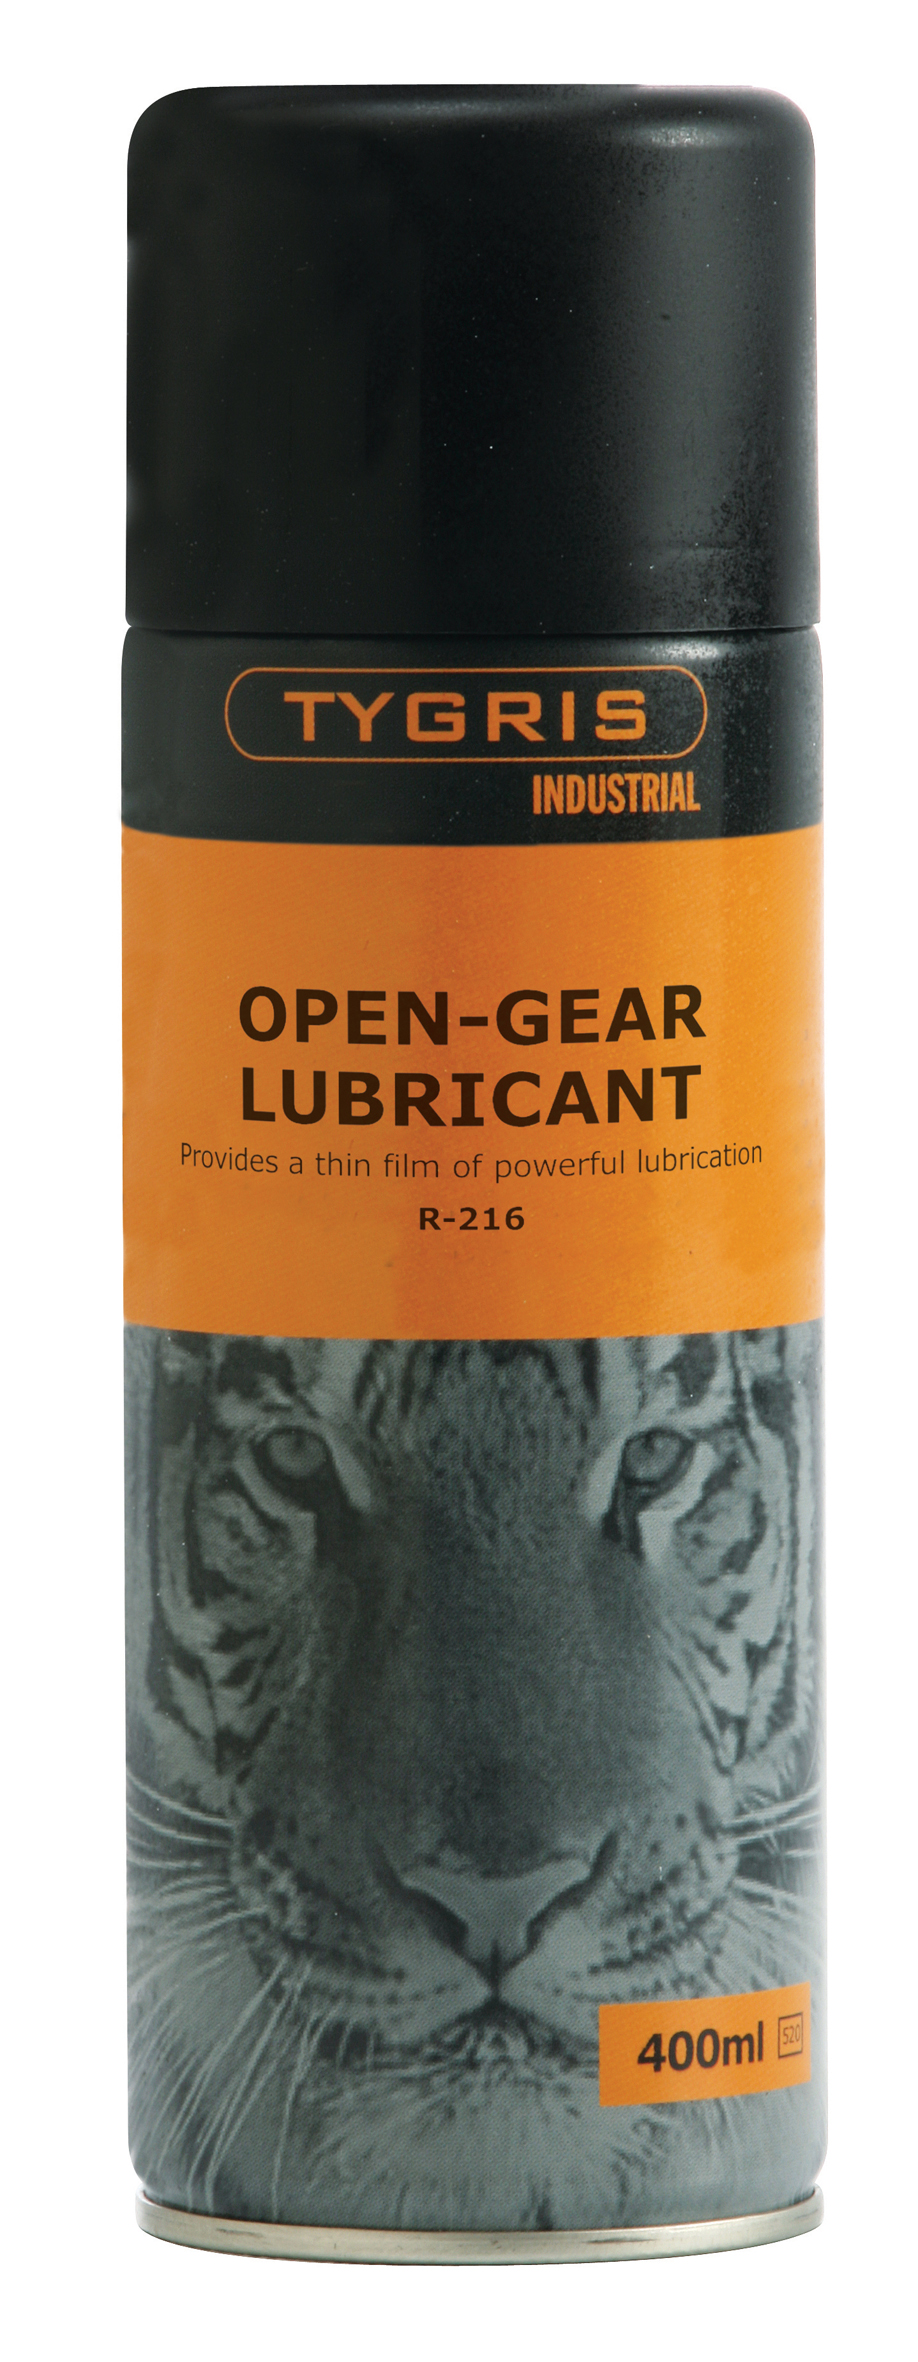 Open-Gear Lubricant